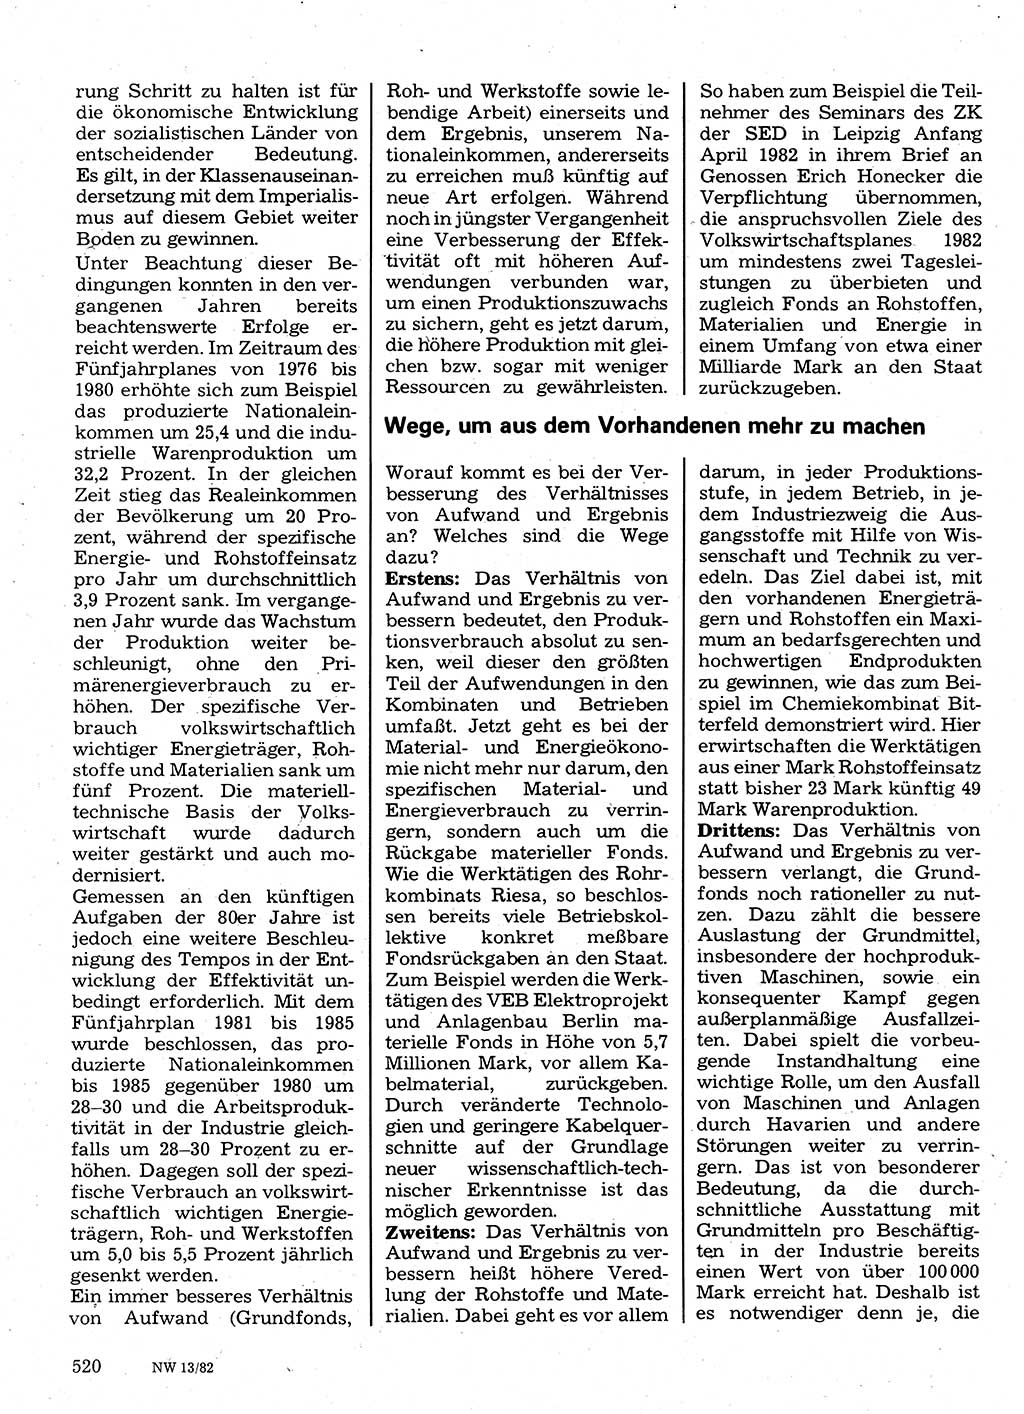 Neuer Weg (NW), Organ des Zentralkomitees (ZK) der SED (Sozialistische Einheitspartei Deutschlands) für Fragen des Parteilebens, 37. Jahrgang [Deutsche Demokratische Republik (DDR)] 1982, Seite 520 (NW ZK SED DDR 1982, S. 520)